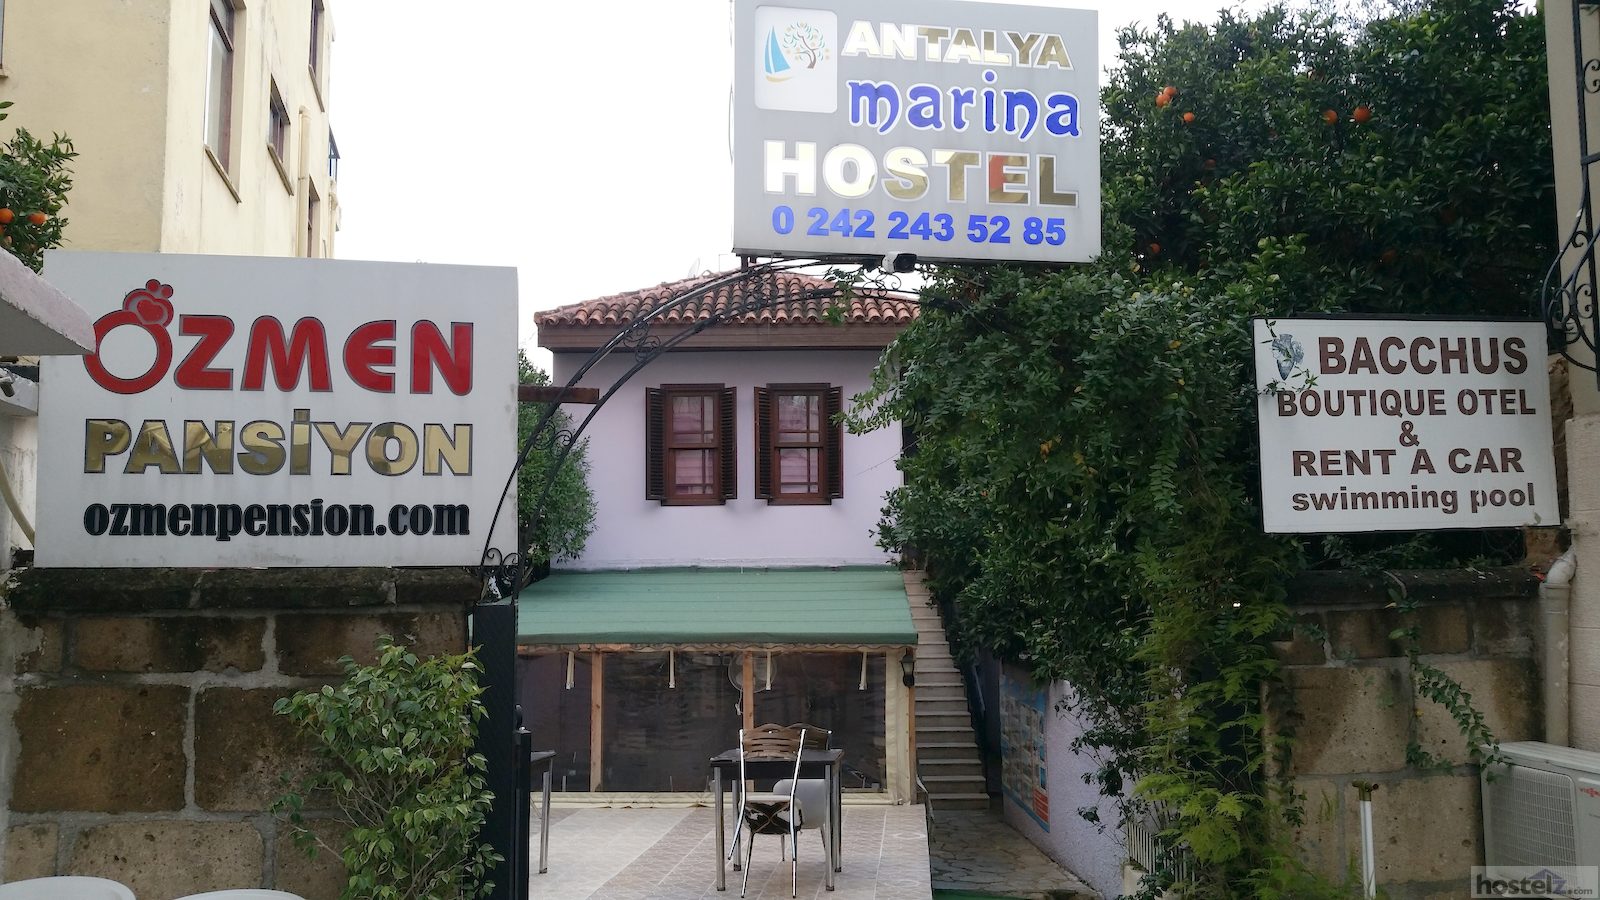 Marina Hostel, Antalya